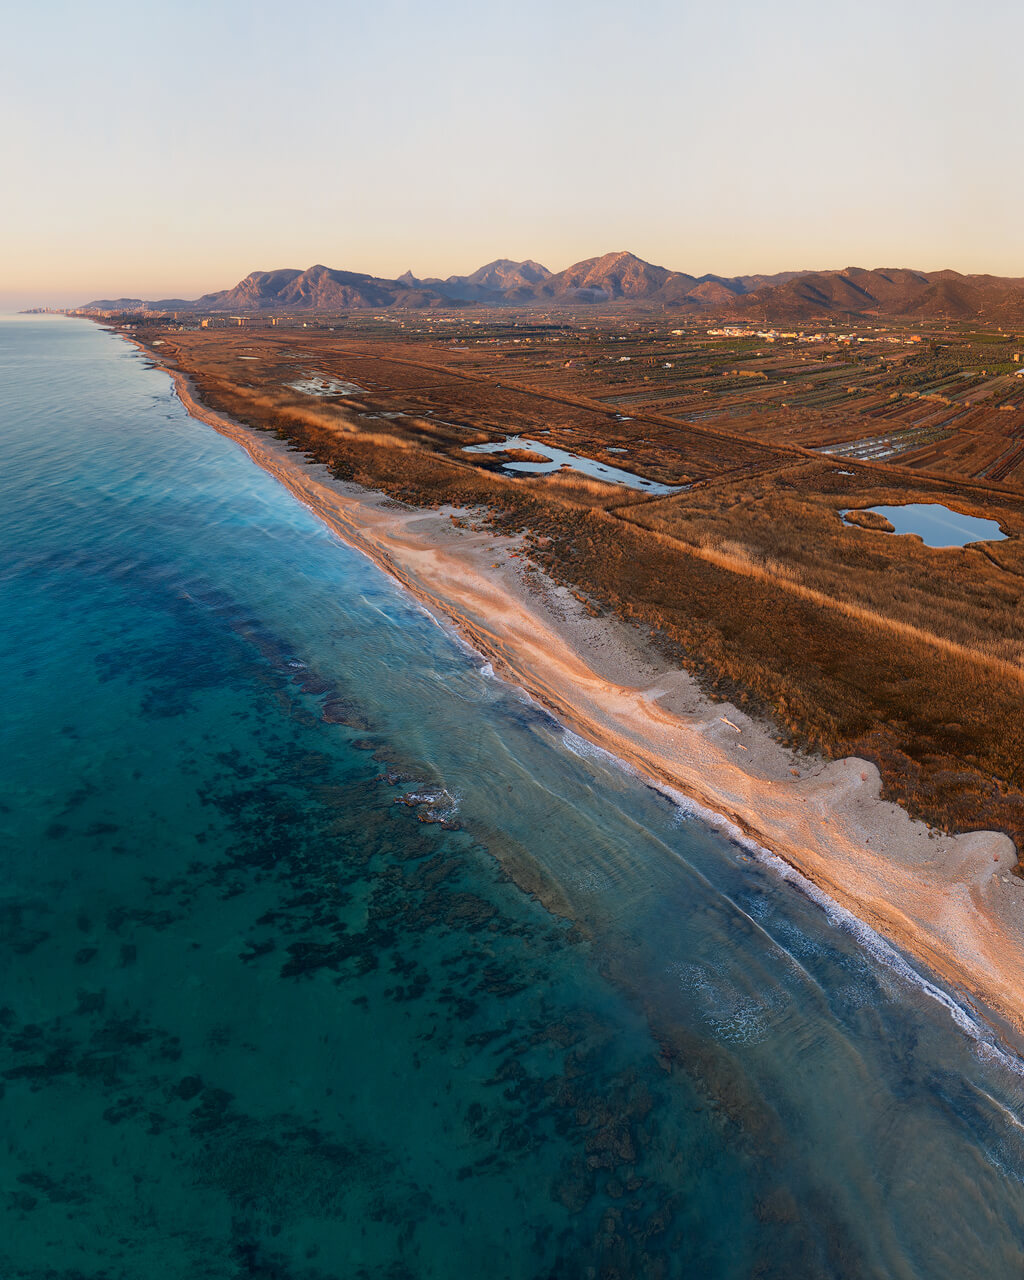 Panoramica con la playa desde arriba durante el amanecer - DJI Mavic2 Pro